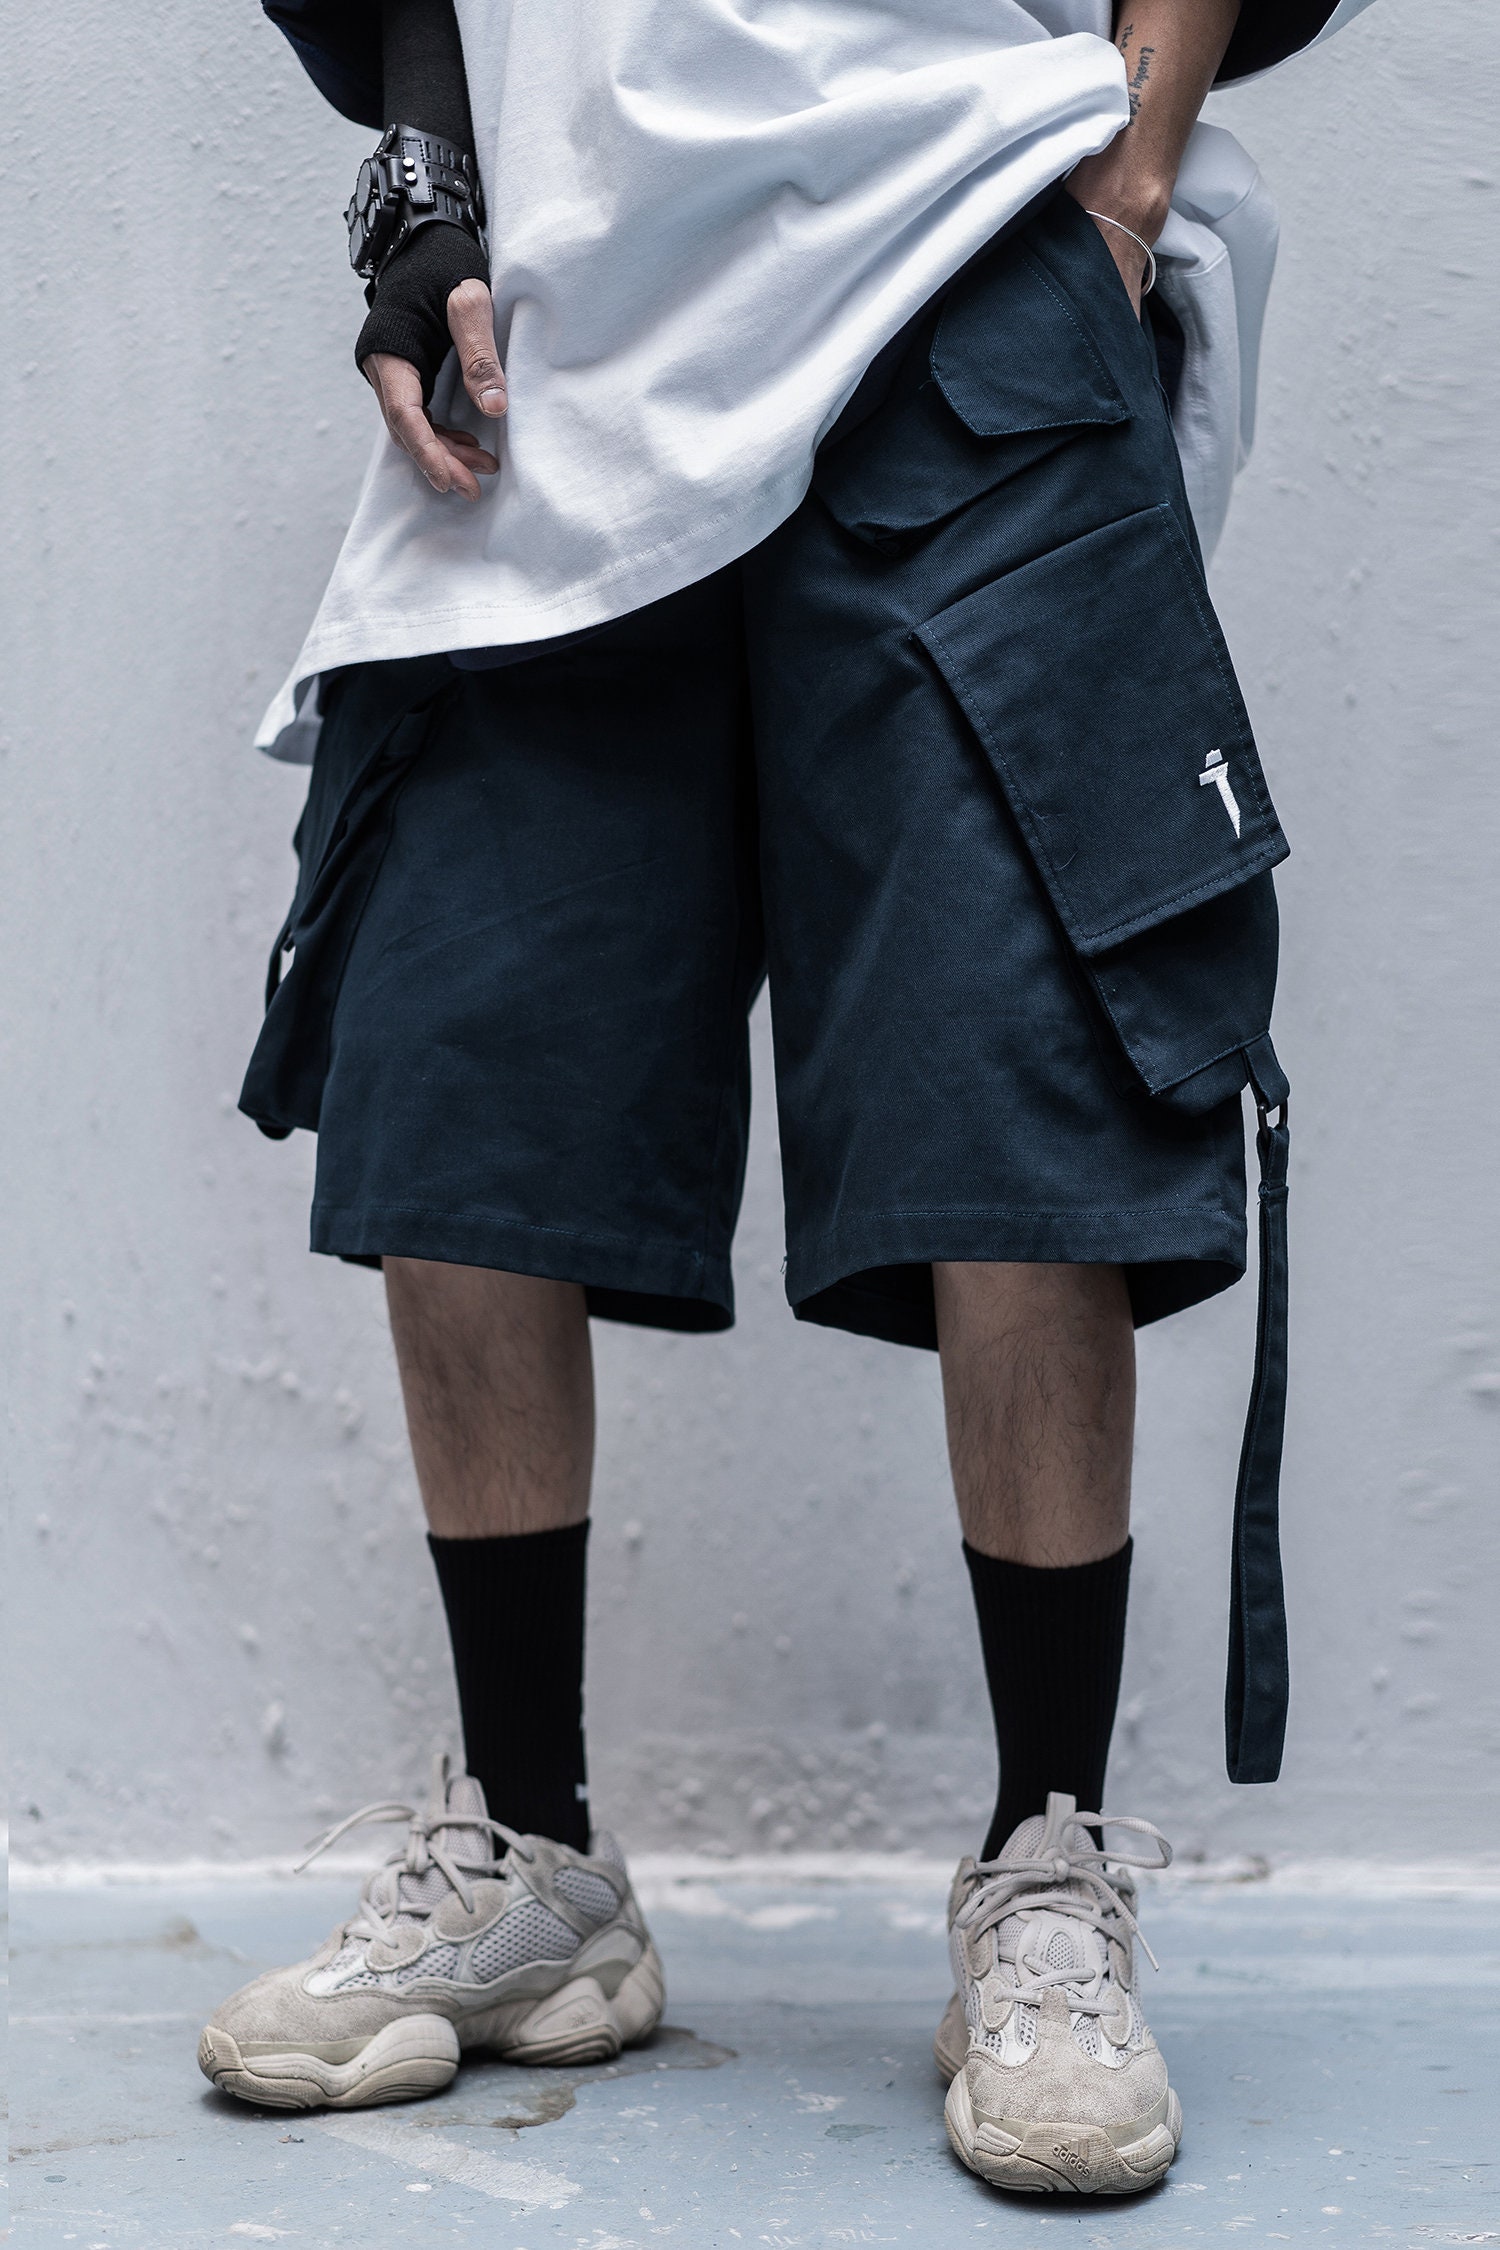 Niepce Inc Japanese Techwear Streetwear Cargo Shorts for Men | Etsy